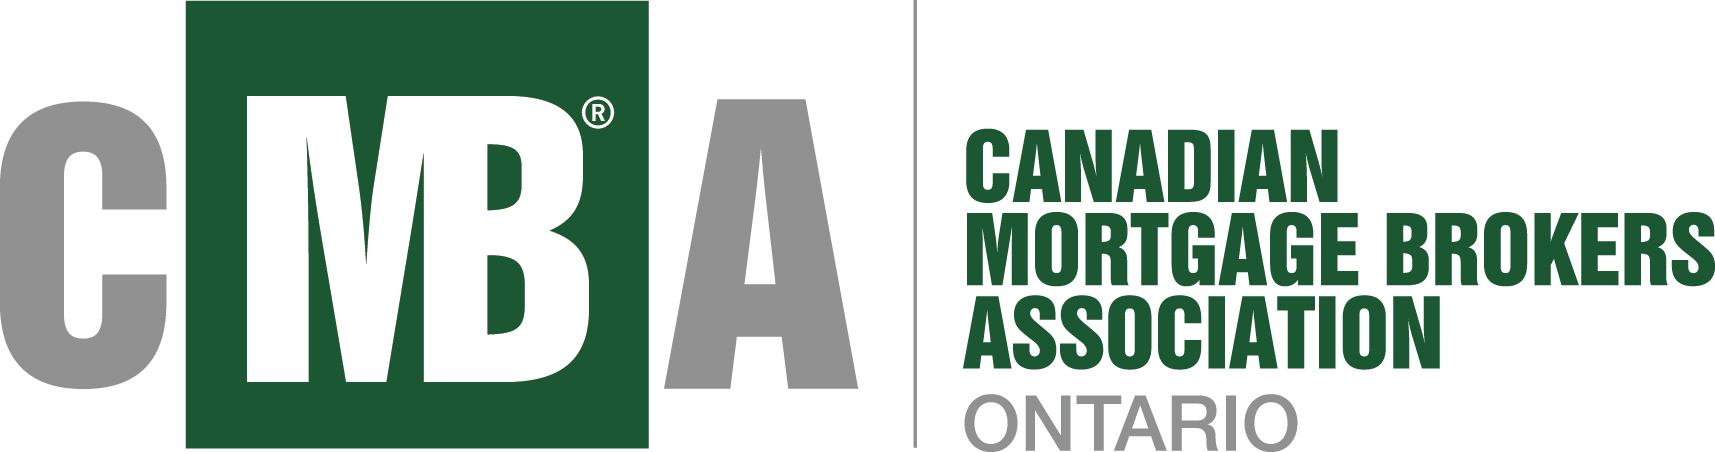 CMBA_logo-Ontario